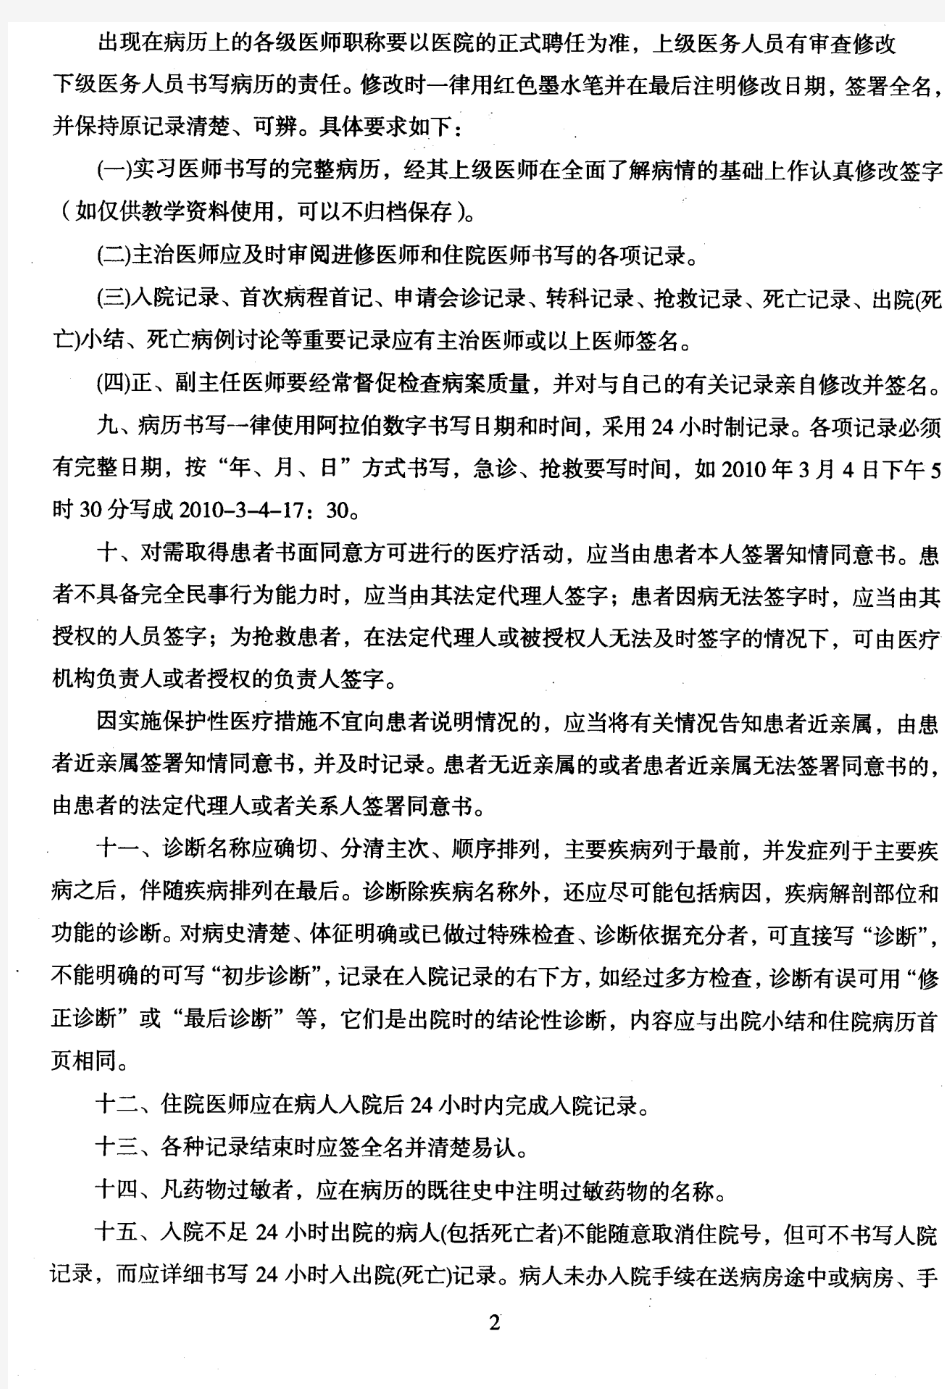 广东省病历书写与管理规范